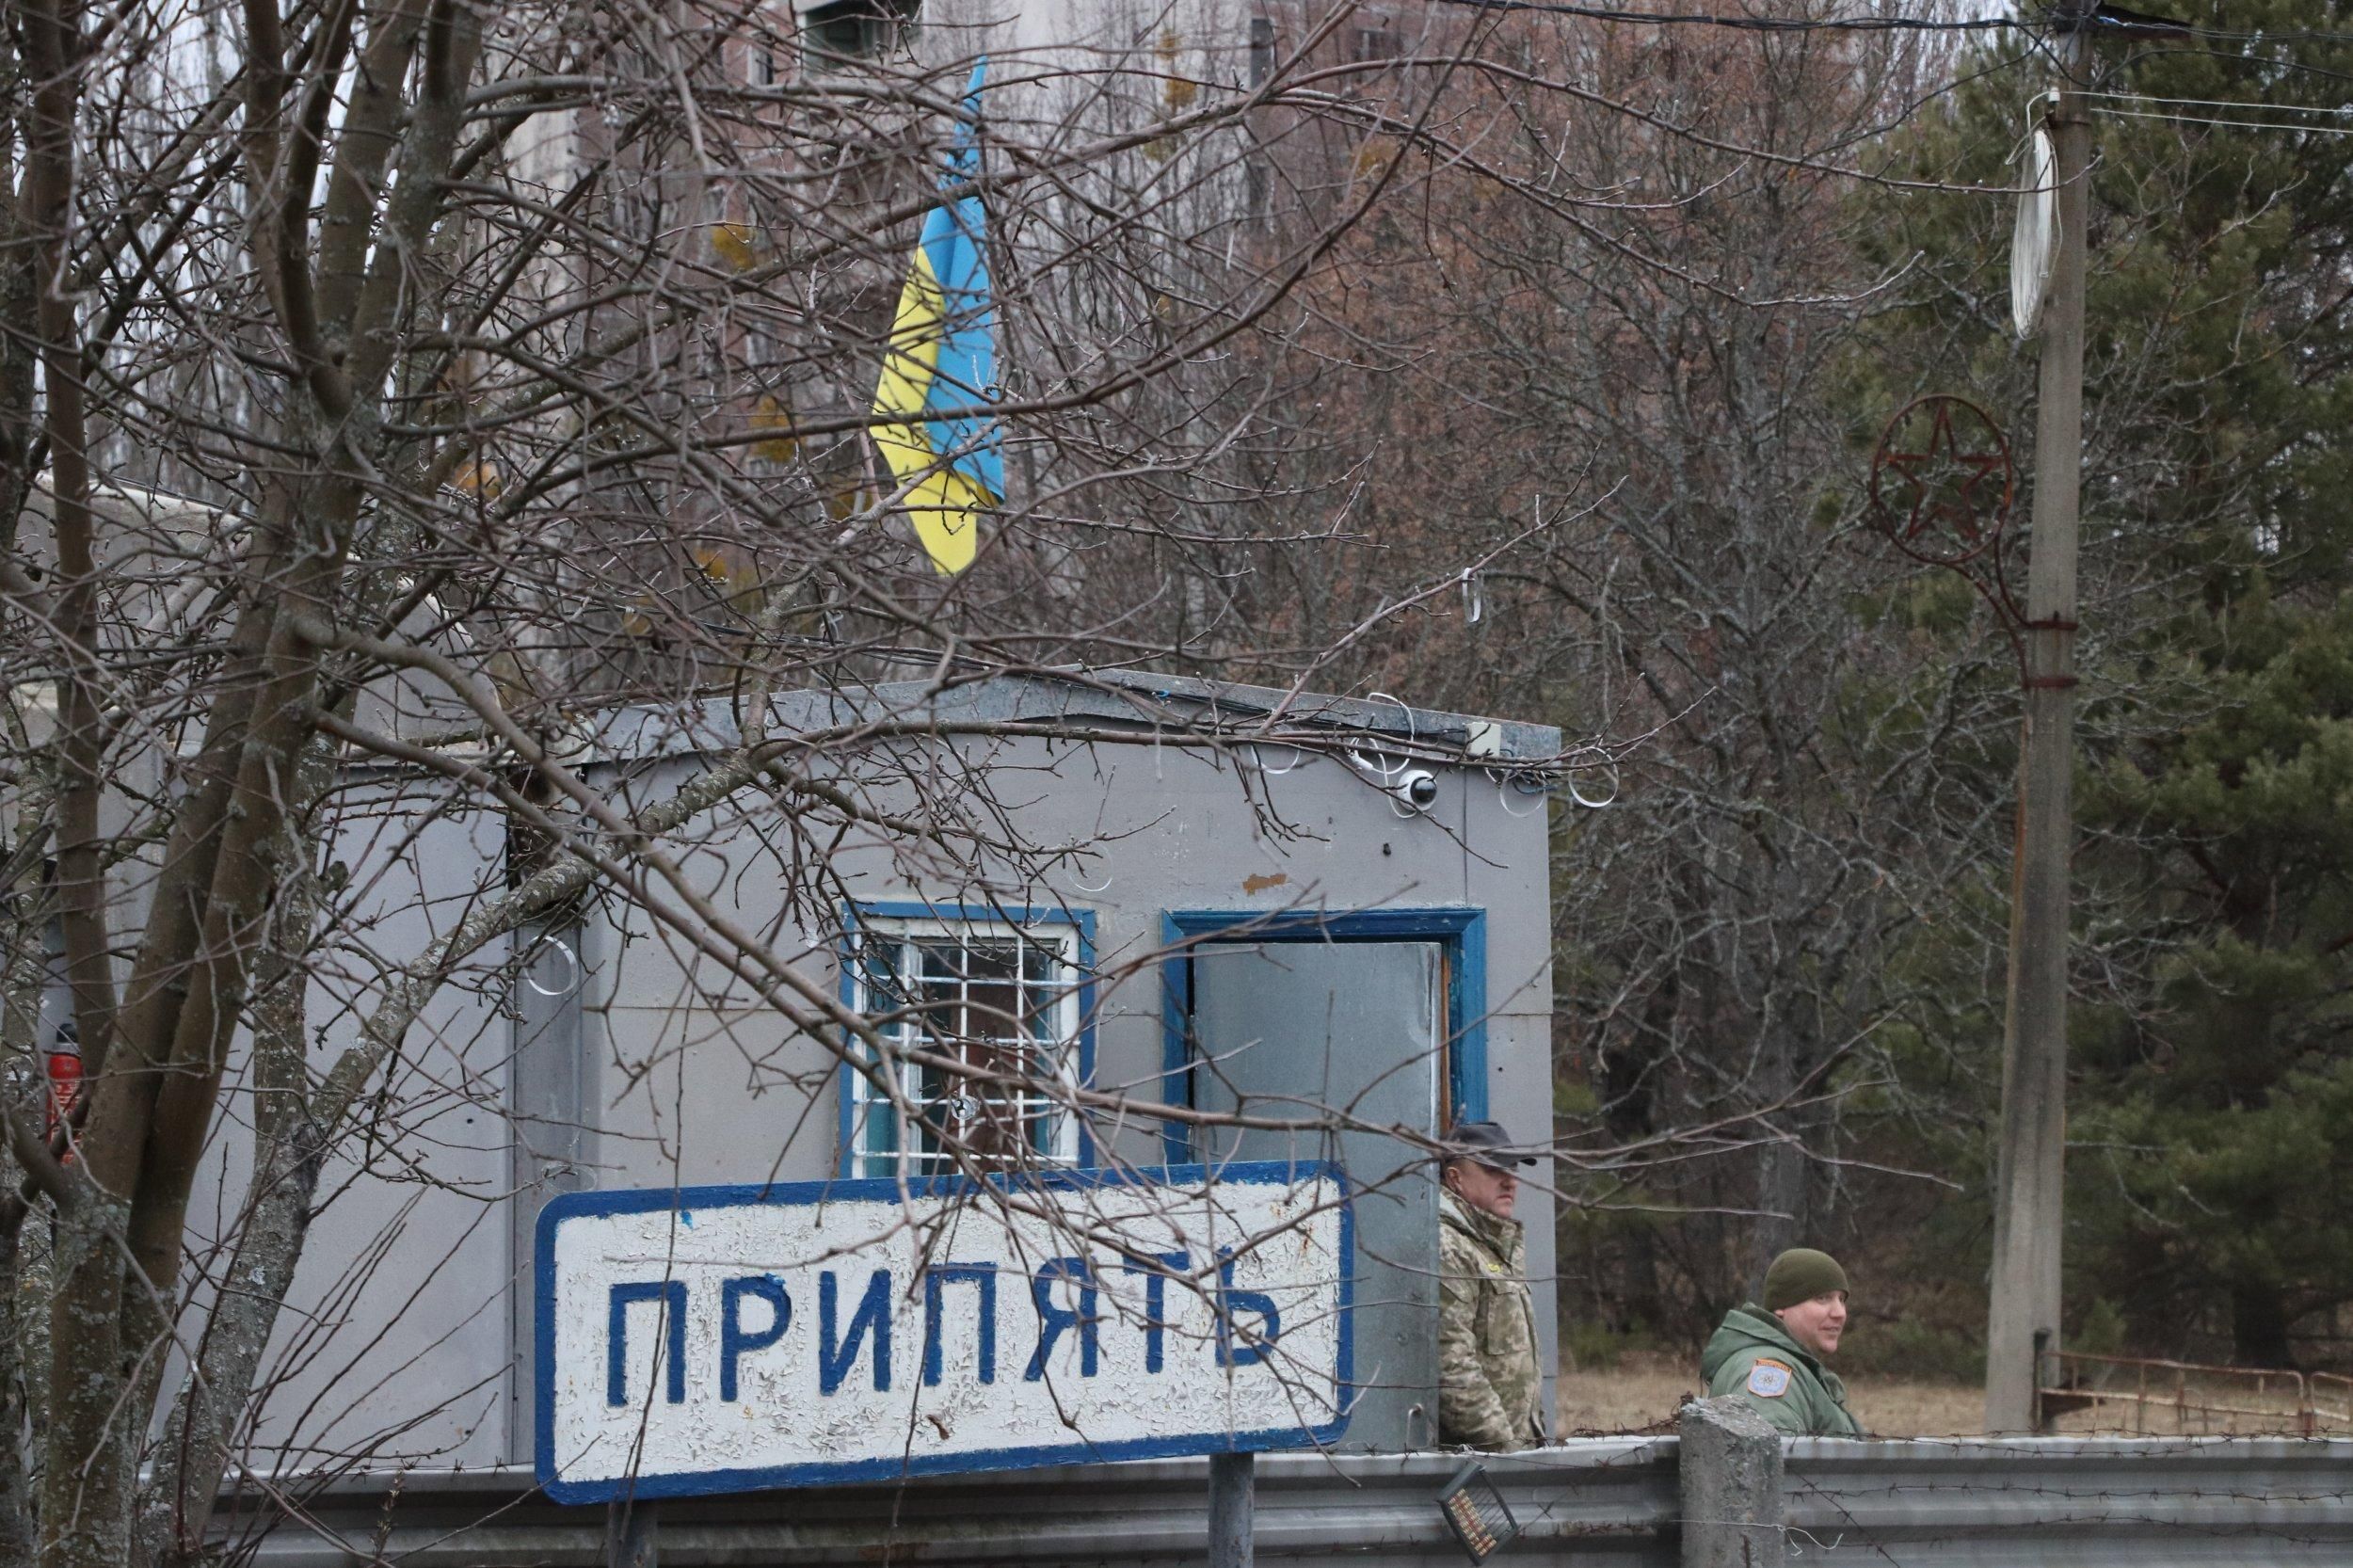 Ukrainian forces regain control of Pripyat - en